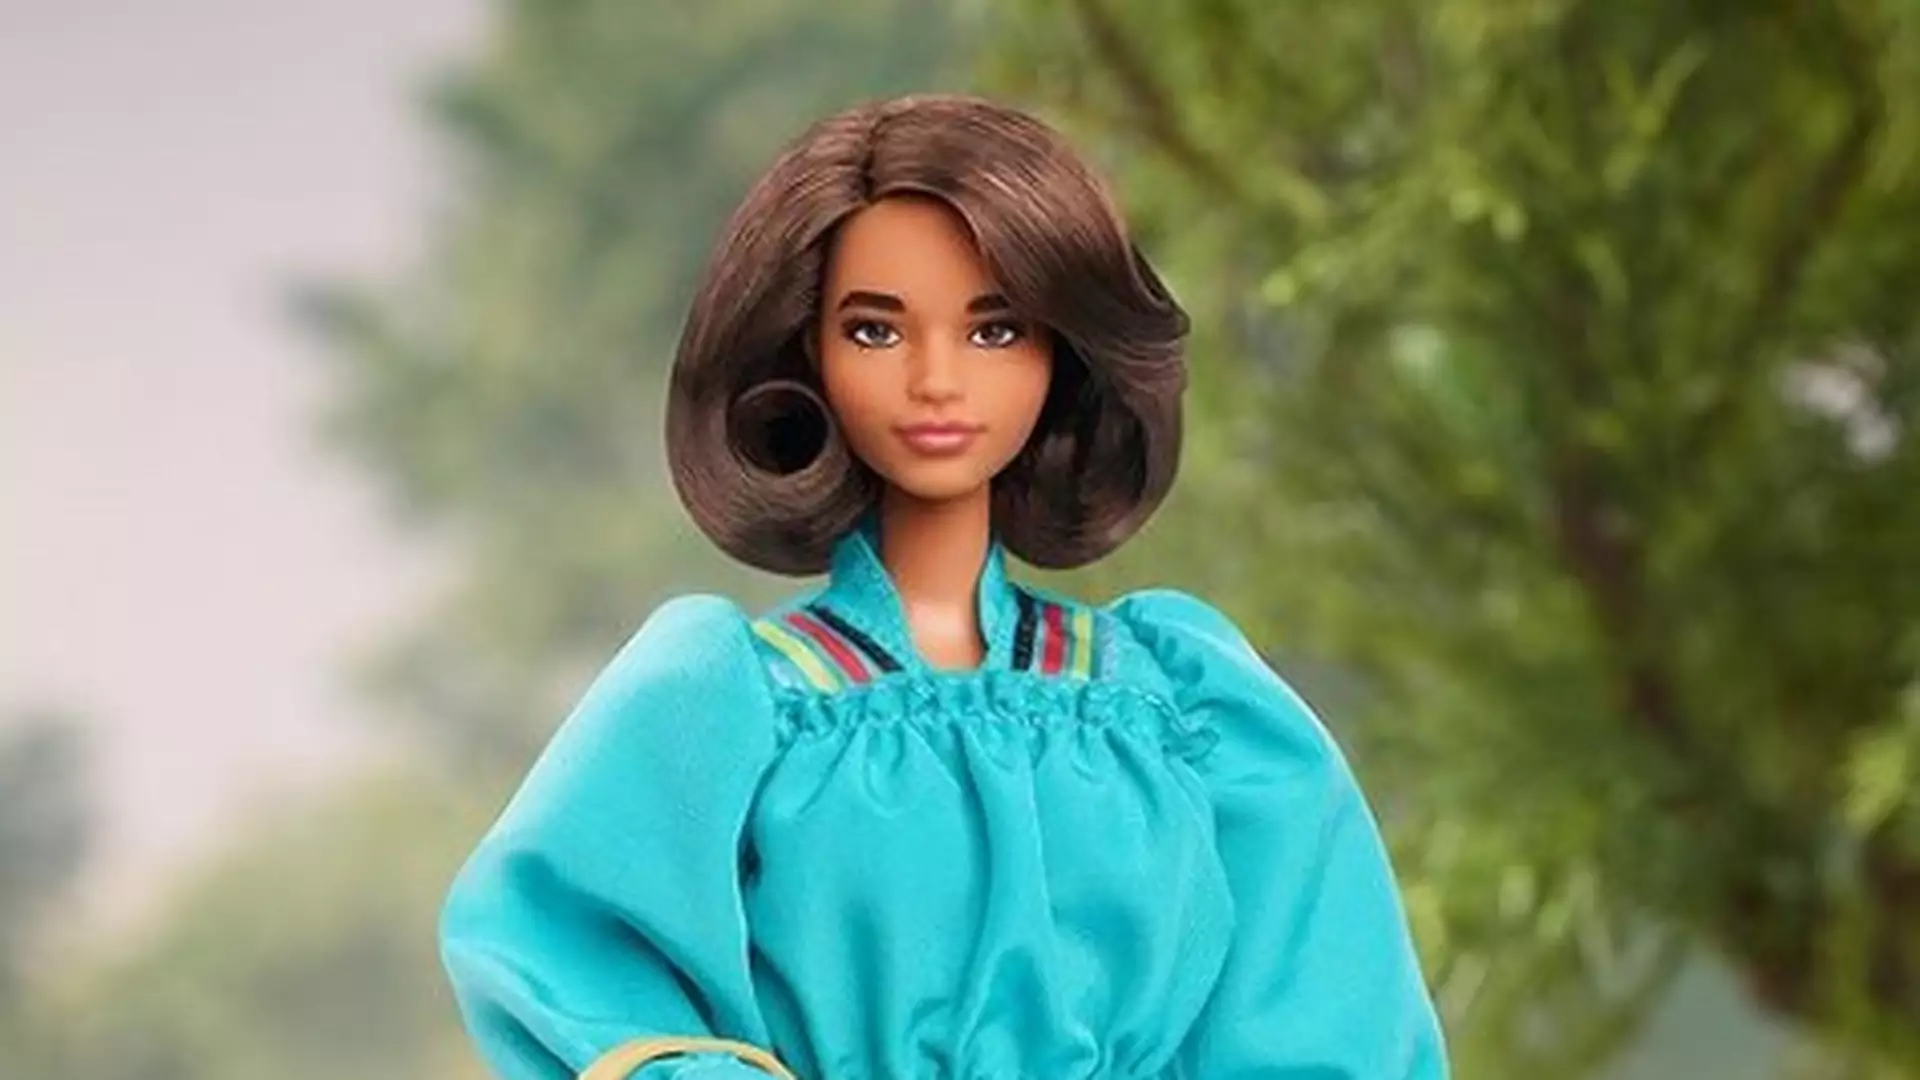 Nowa lalka Barbie to znana aktywistka. Budzi kontrowersje